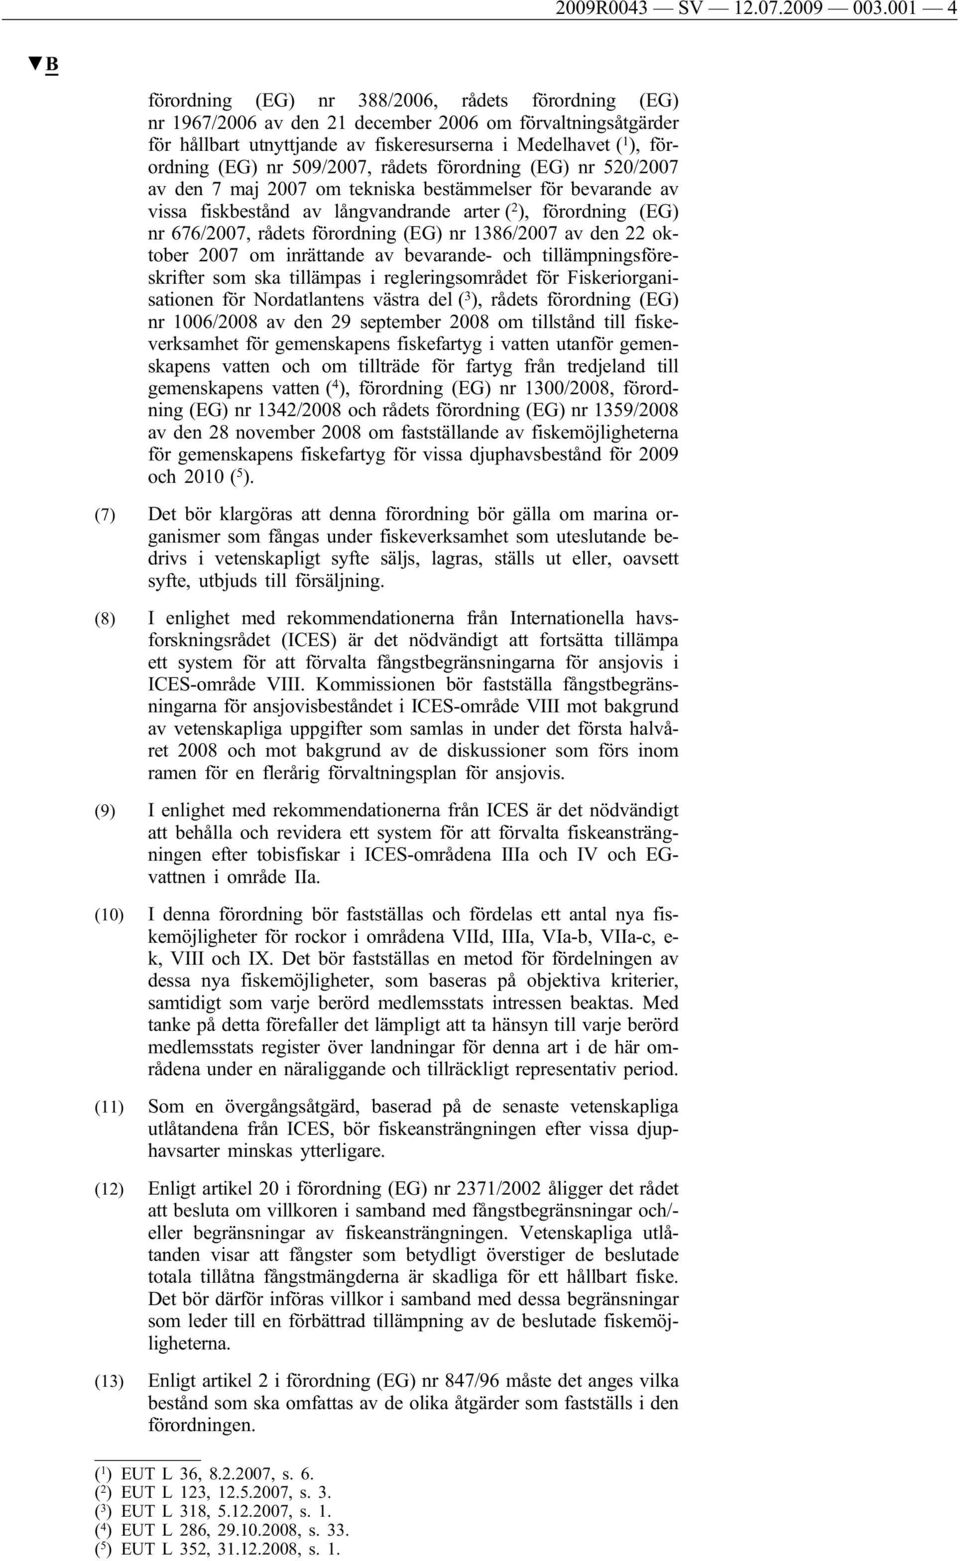 nr 509/2007, rådets förordning (EG) nr 520/2007 av den 7 maj 2007 om tekniska bestämmelser för bevarande av vissa fiskbestånd av långvandrande arter ( 2 ), förordning (EG) nr 676/2007, rådets